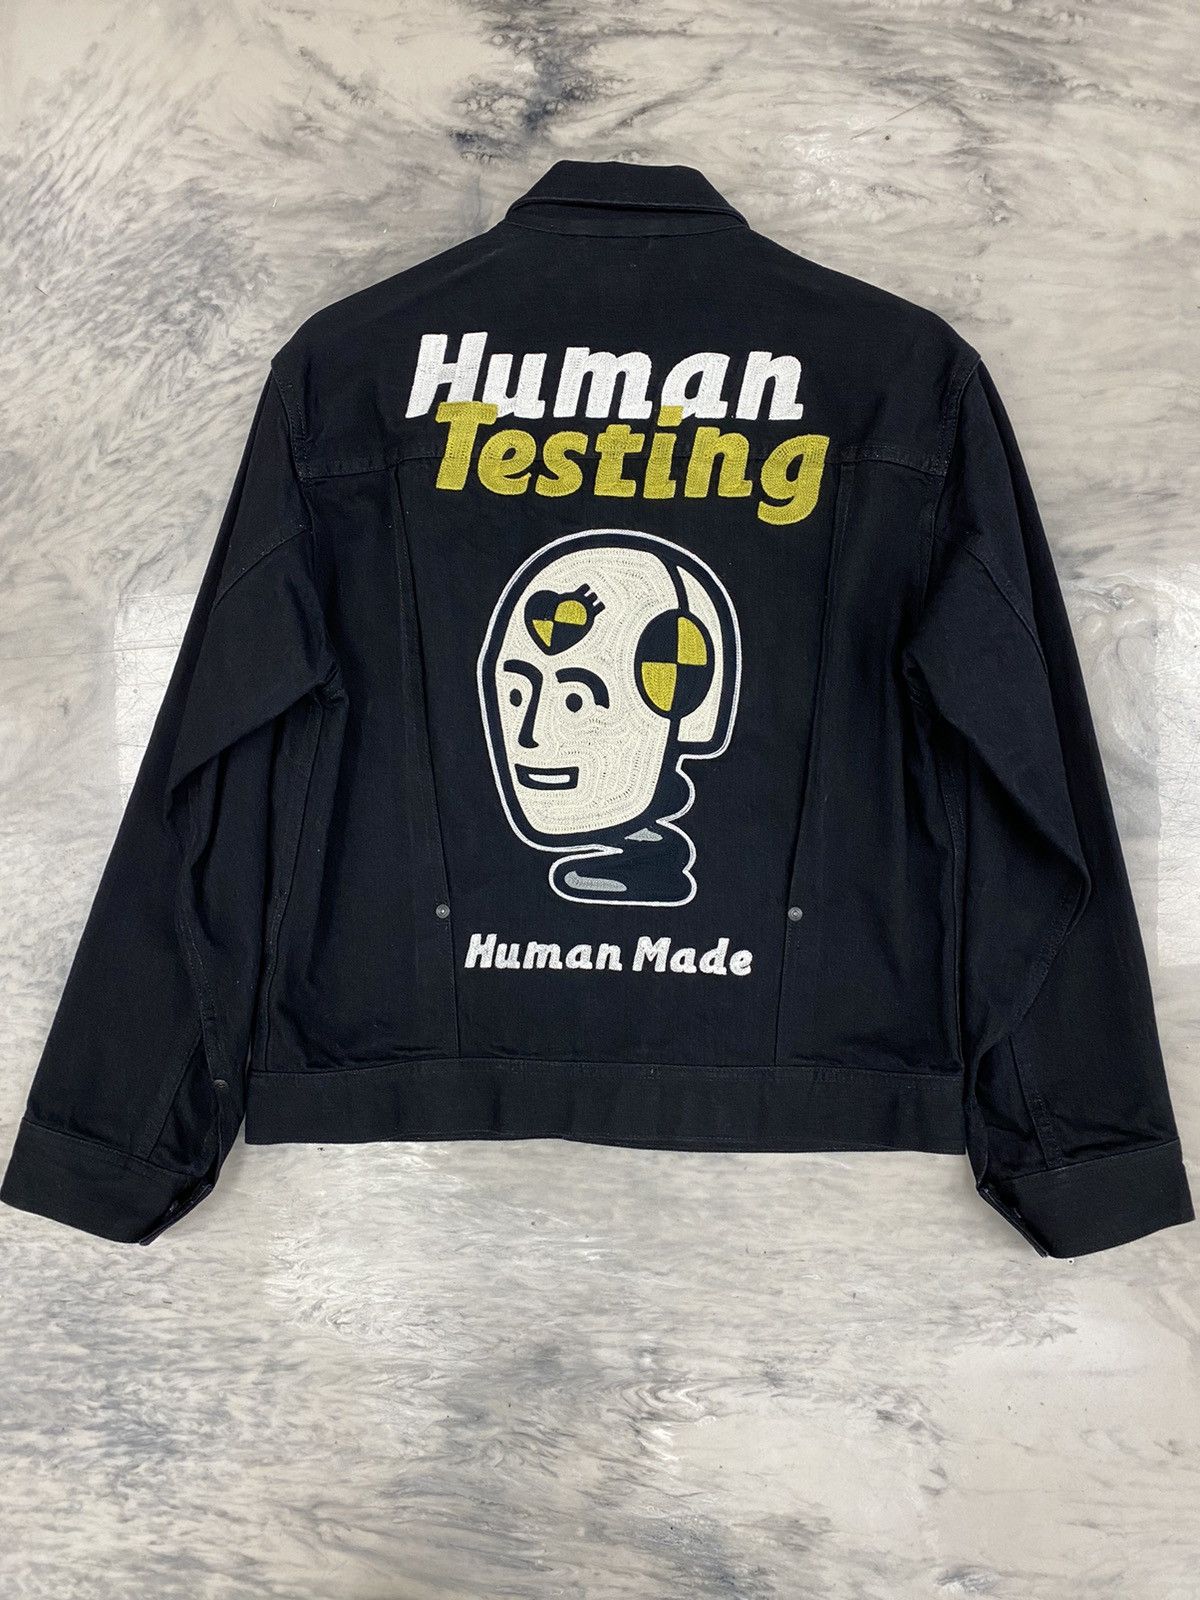 Human Made Human Made x ASAP Rocky Human Testing Jacket medium